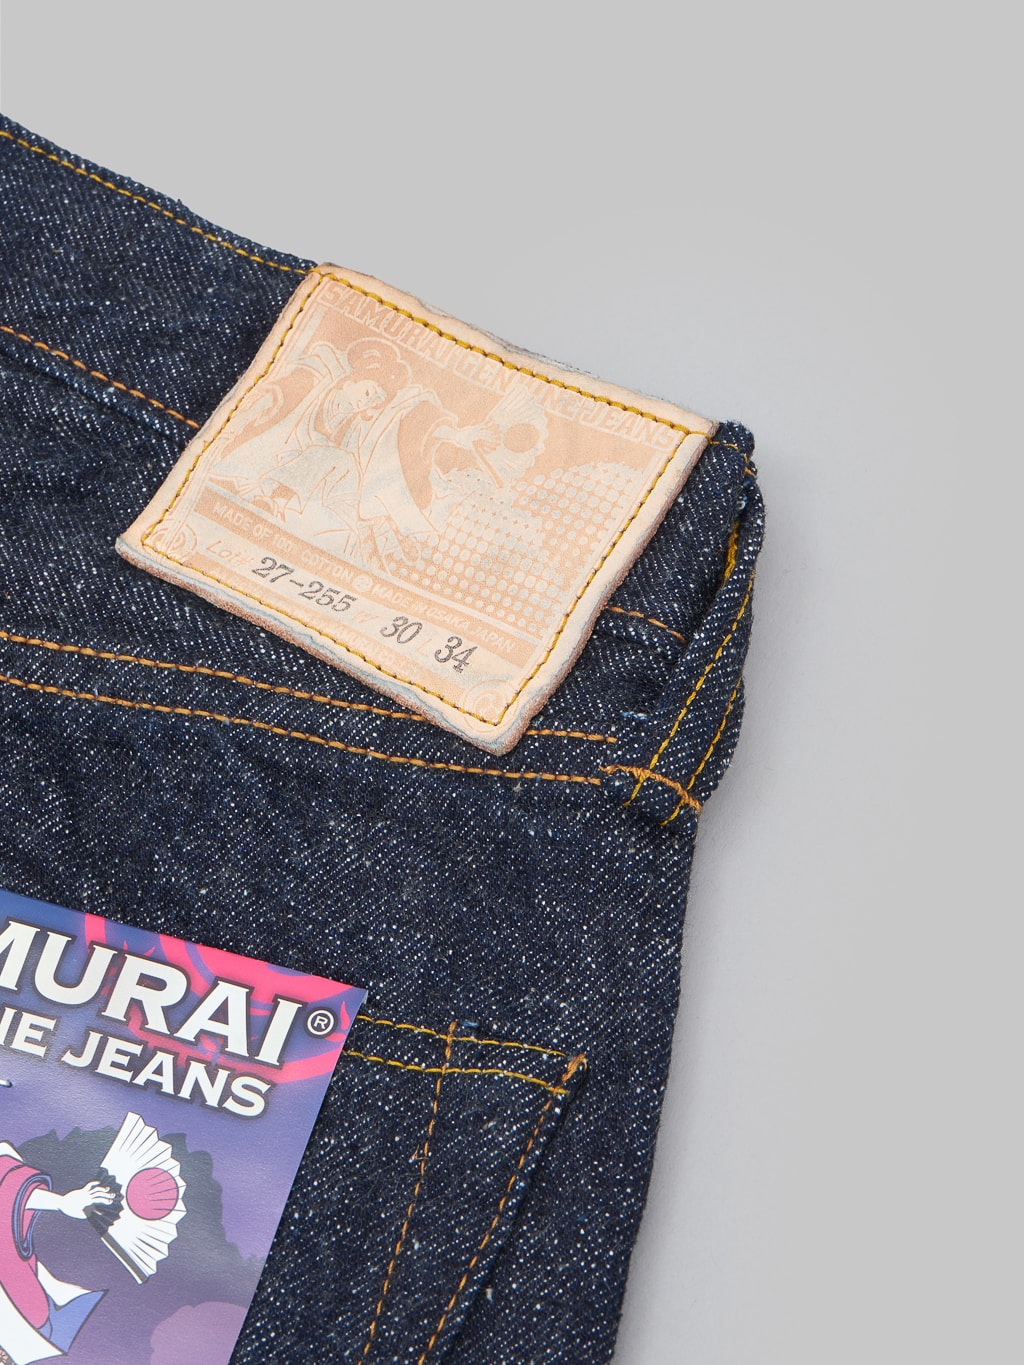 Samurai Jeans S0255XX Ushiwaka 15oz jeans leather patch